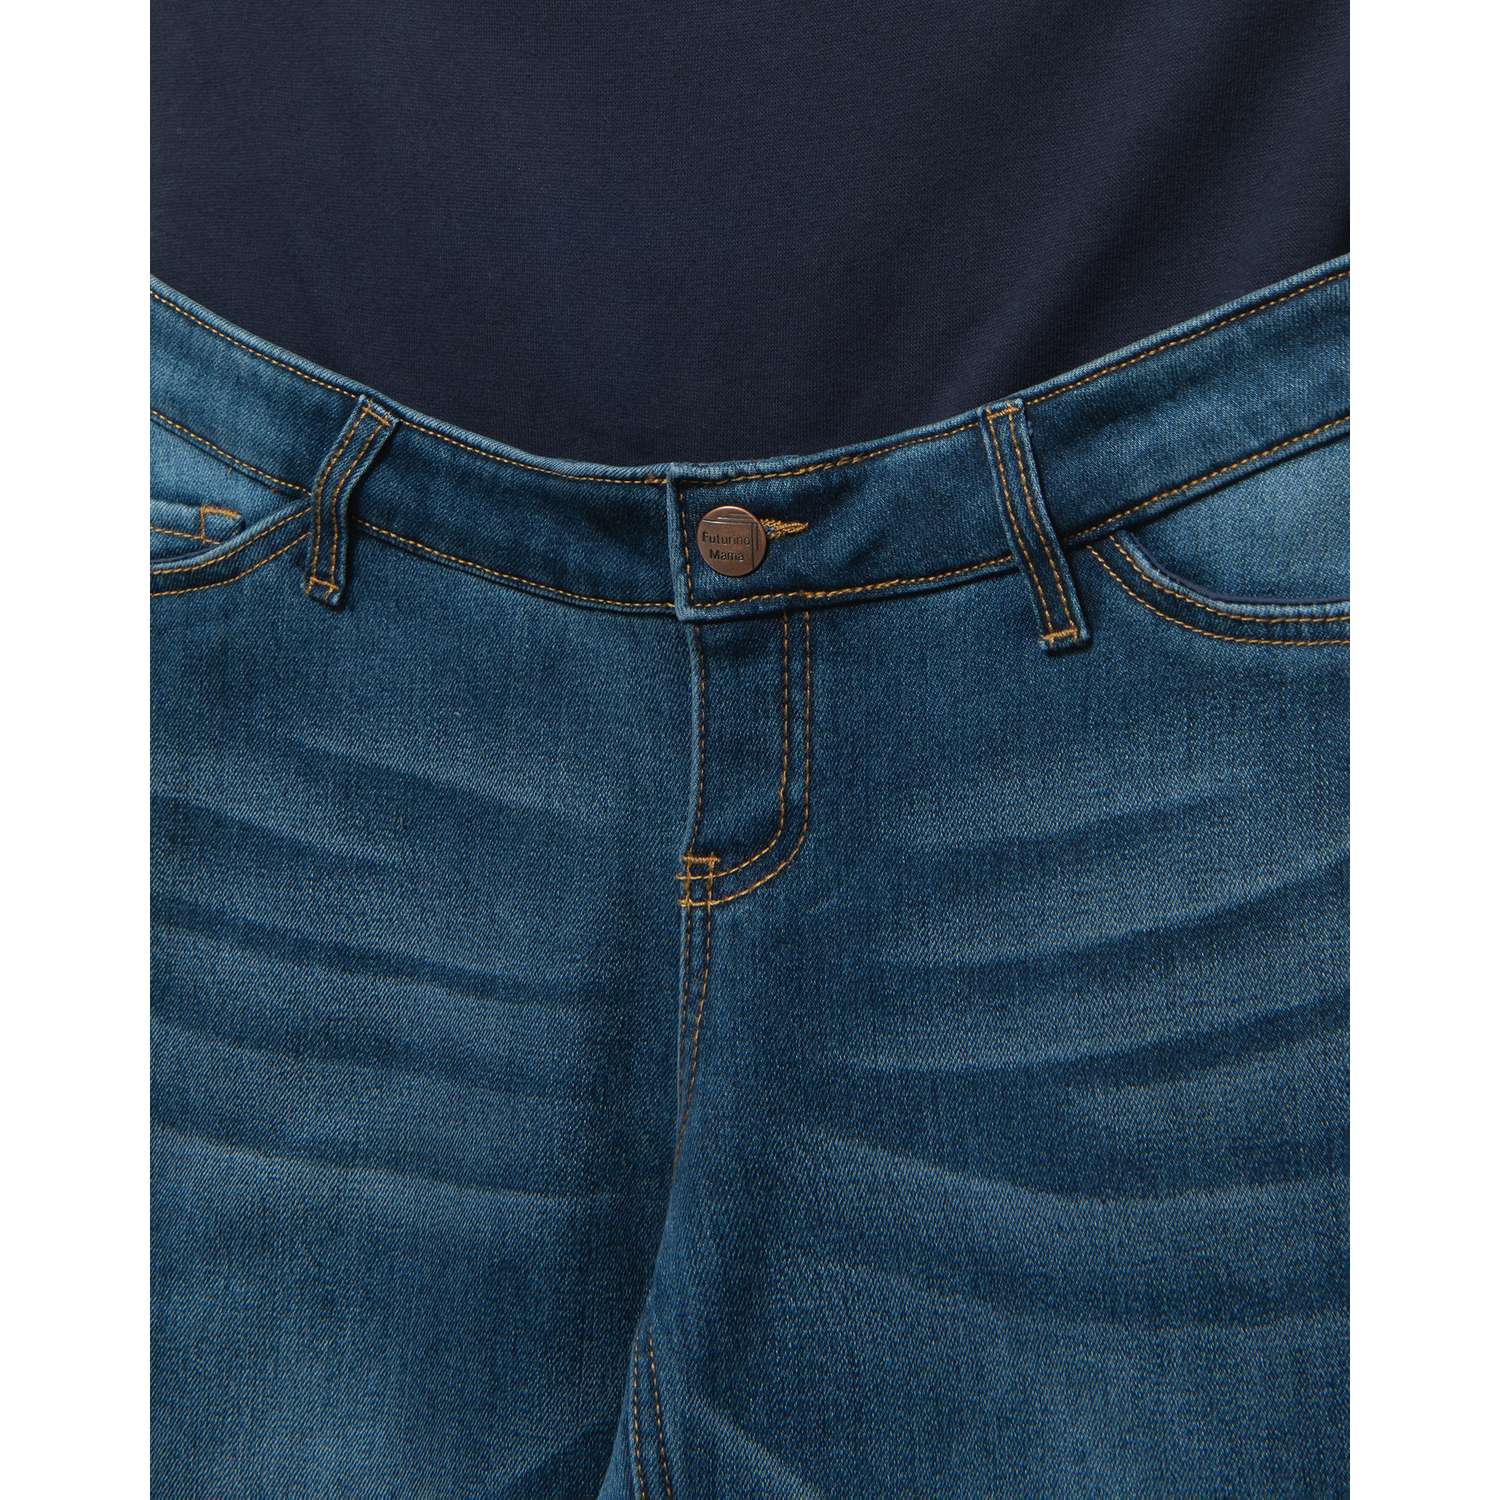 Утеплённые джинсы для беременных Futurino Mama W23FM6-61-mat-66 - фото 4